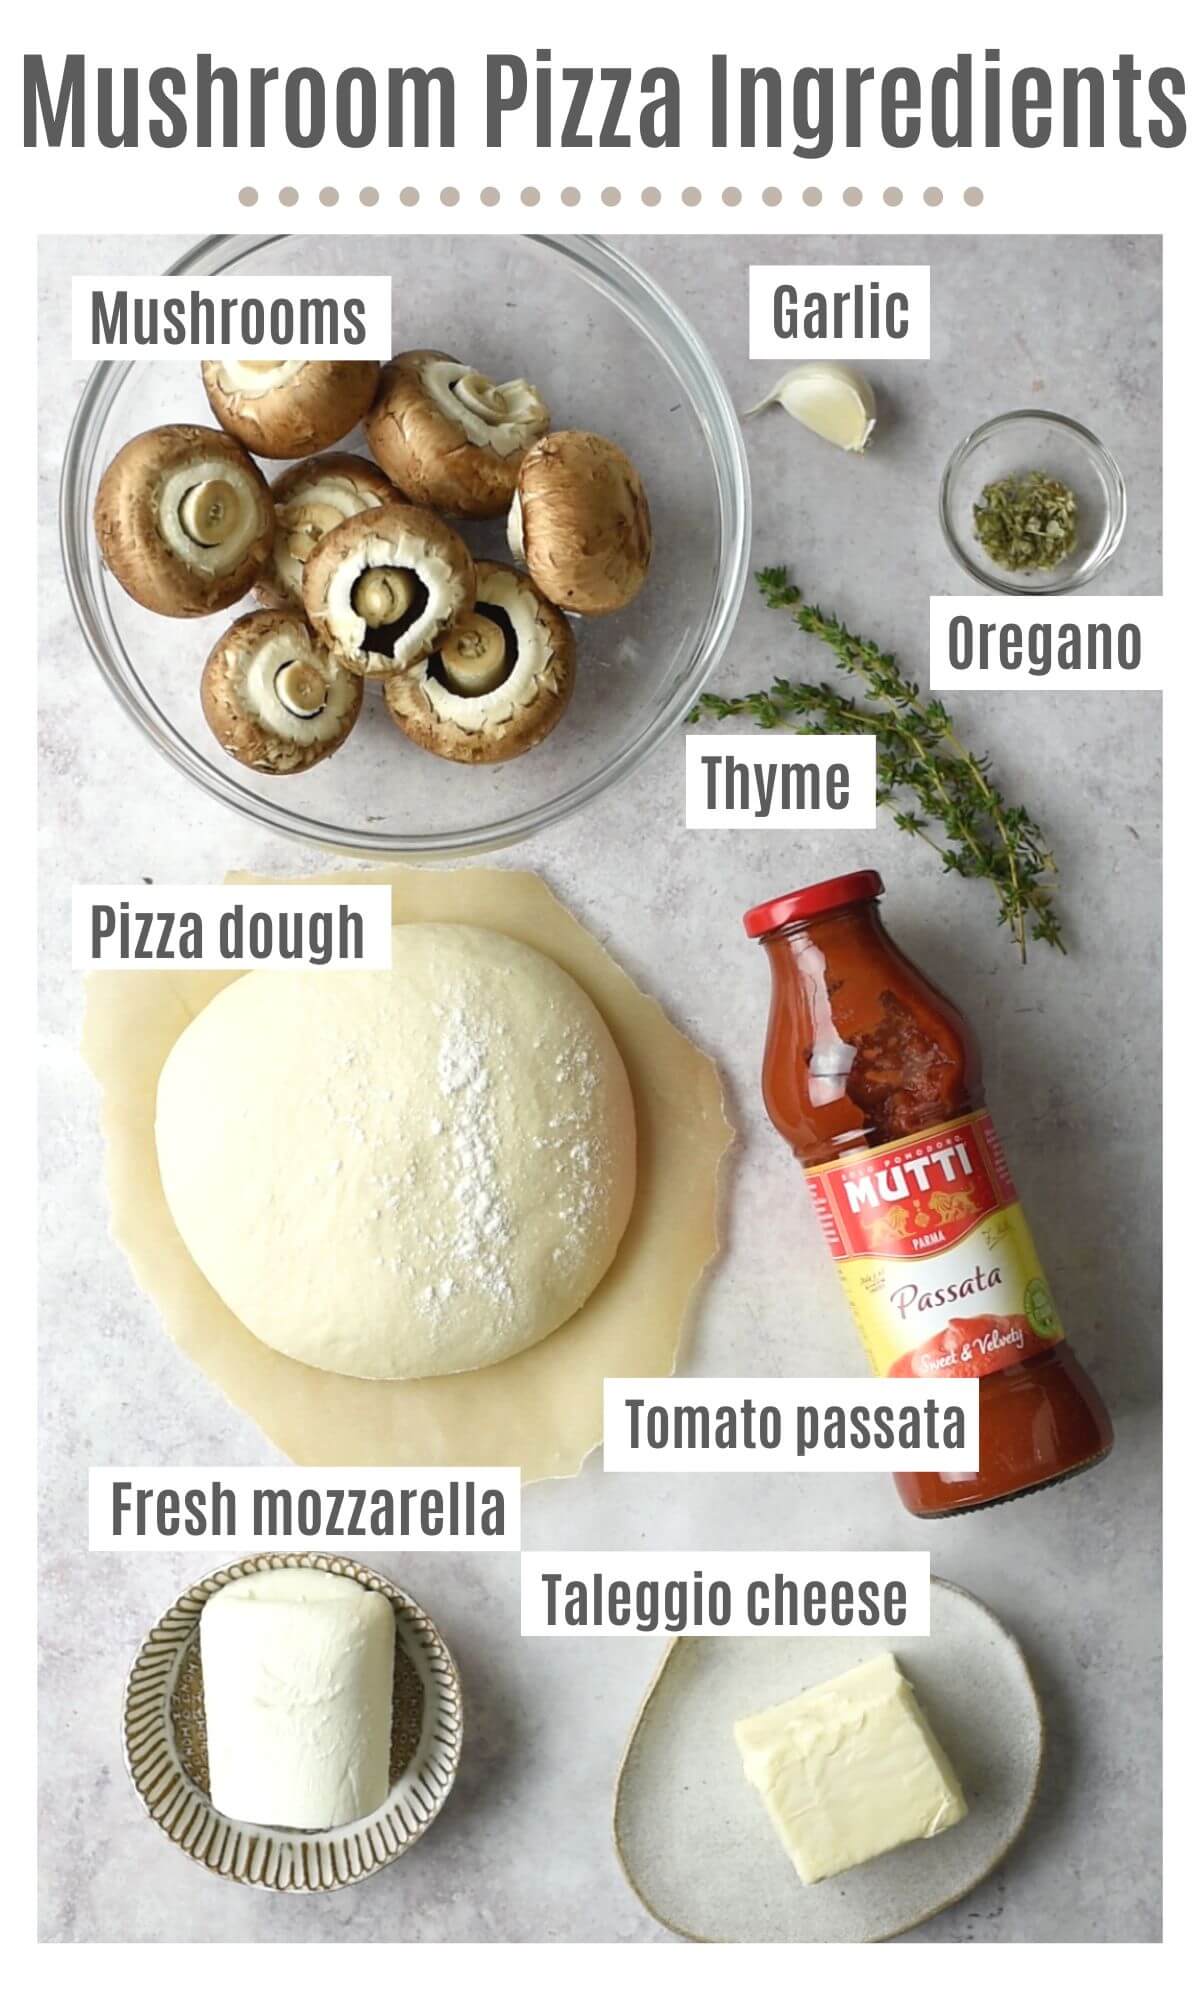 Una toma cenital de todos los ingredientes que necesitas para hacer una pizza de champiñones.